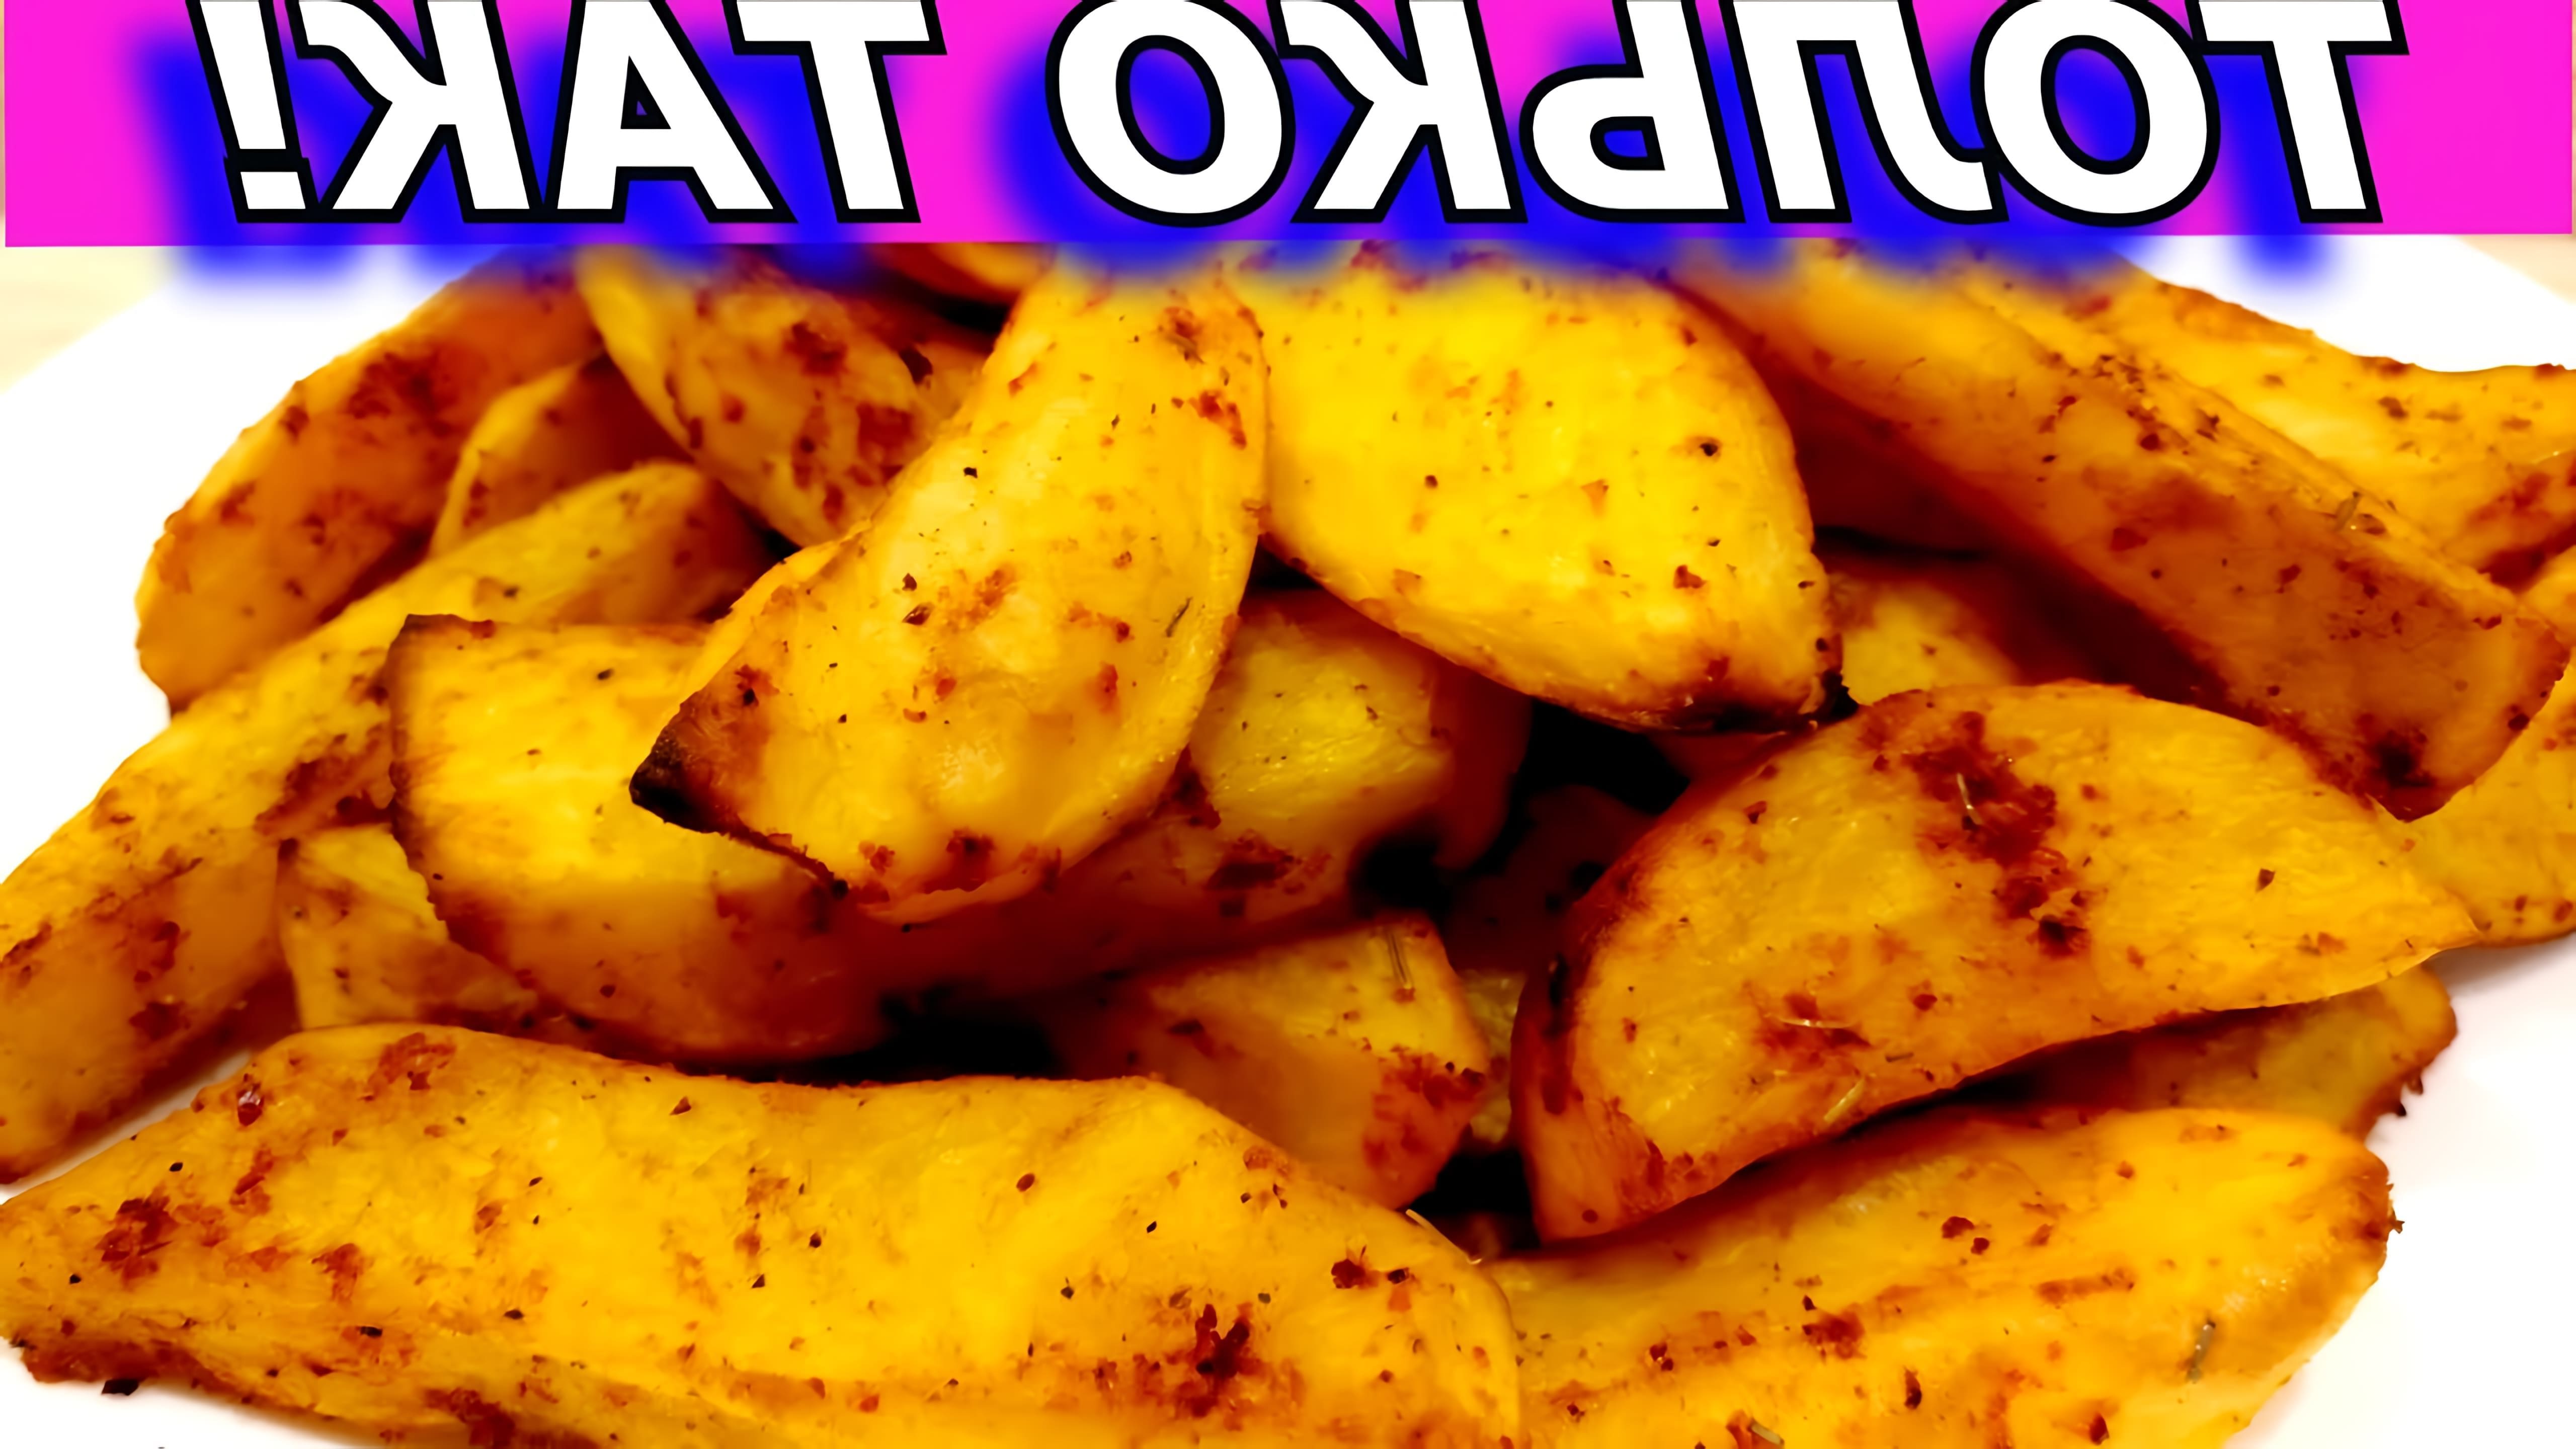 В этом видео демонстрируется процесс приготовления запеченной в духовке картофеля дольками со специями по-деревенски